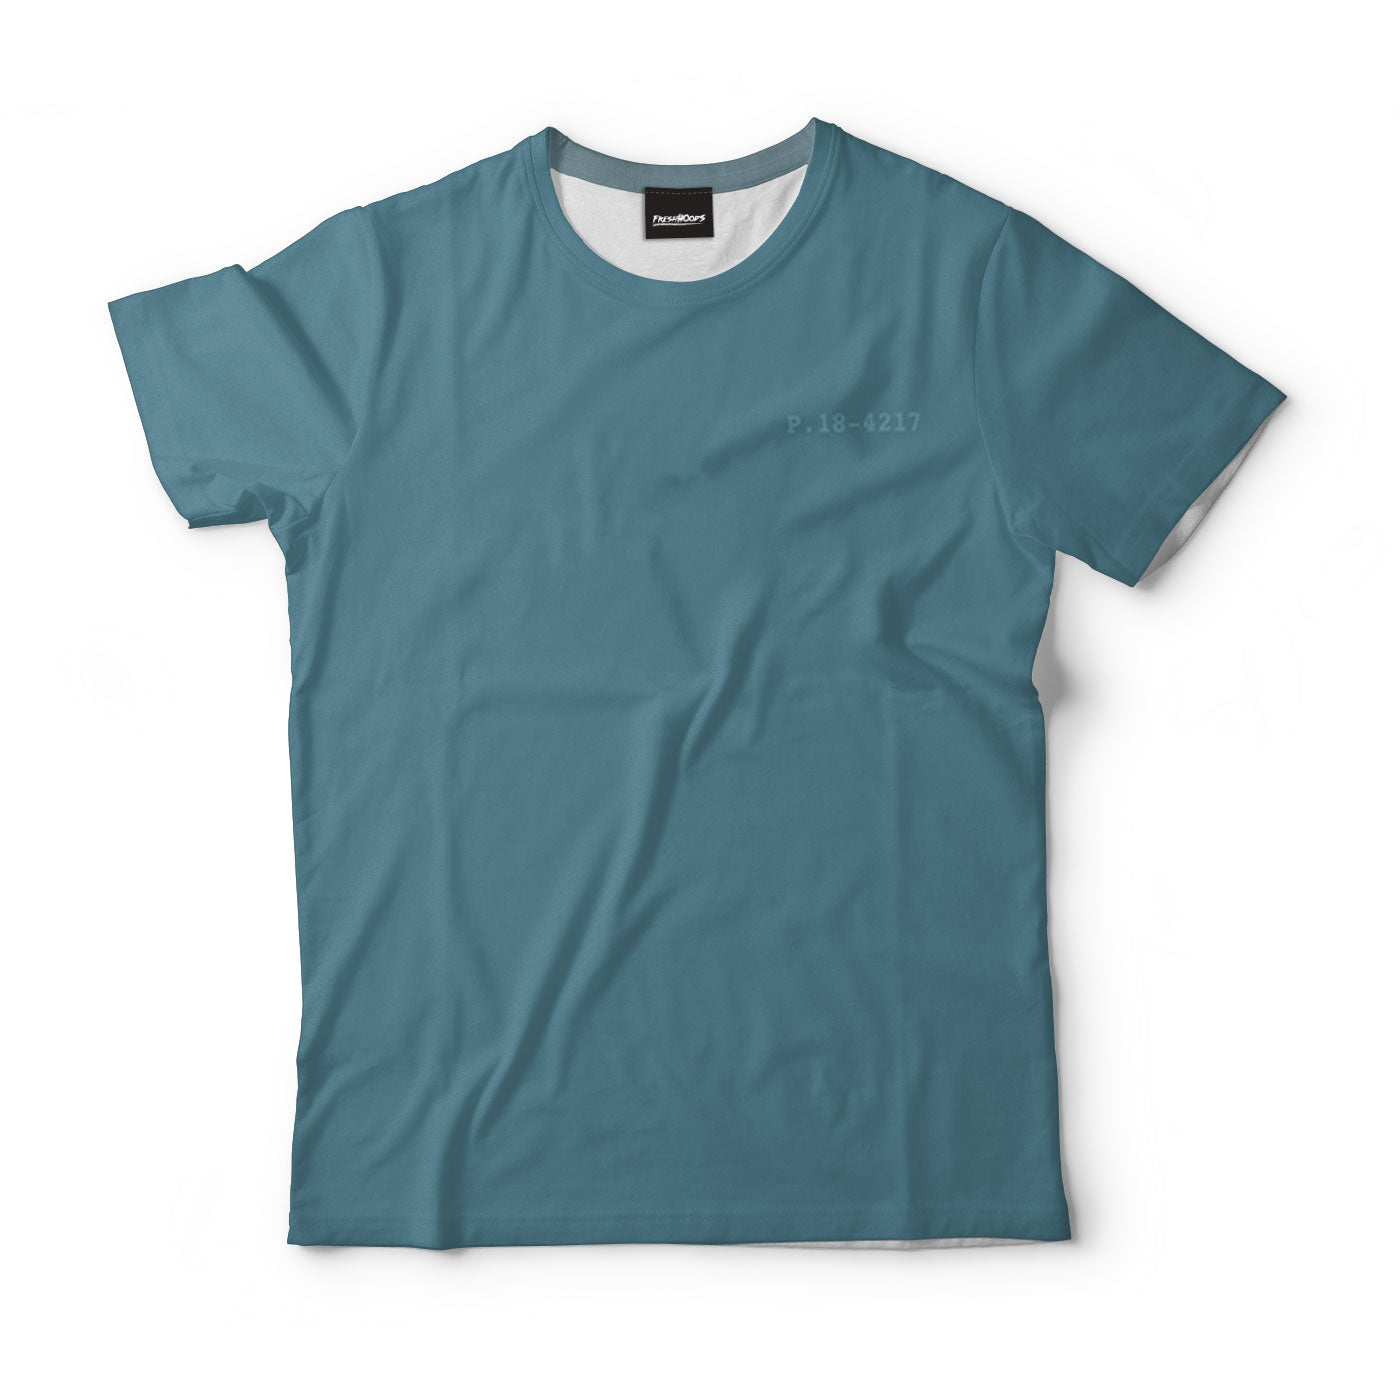 Bluestone T-Shirt